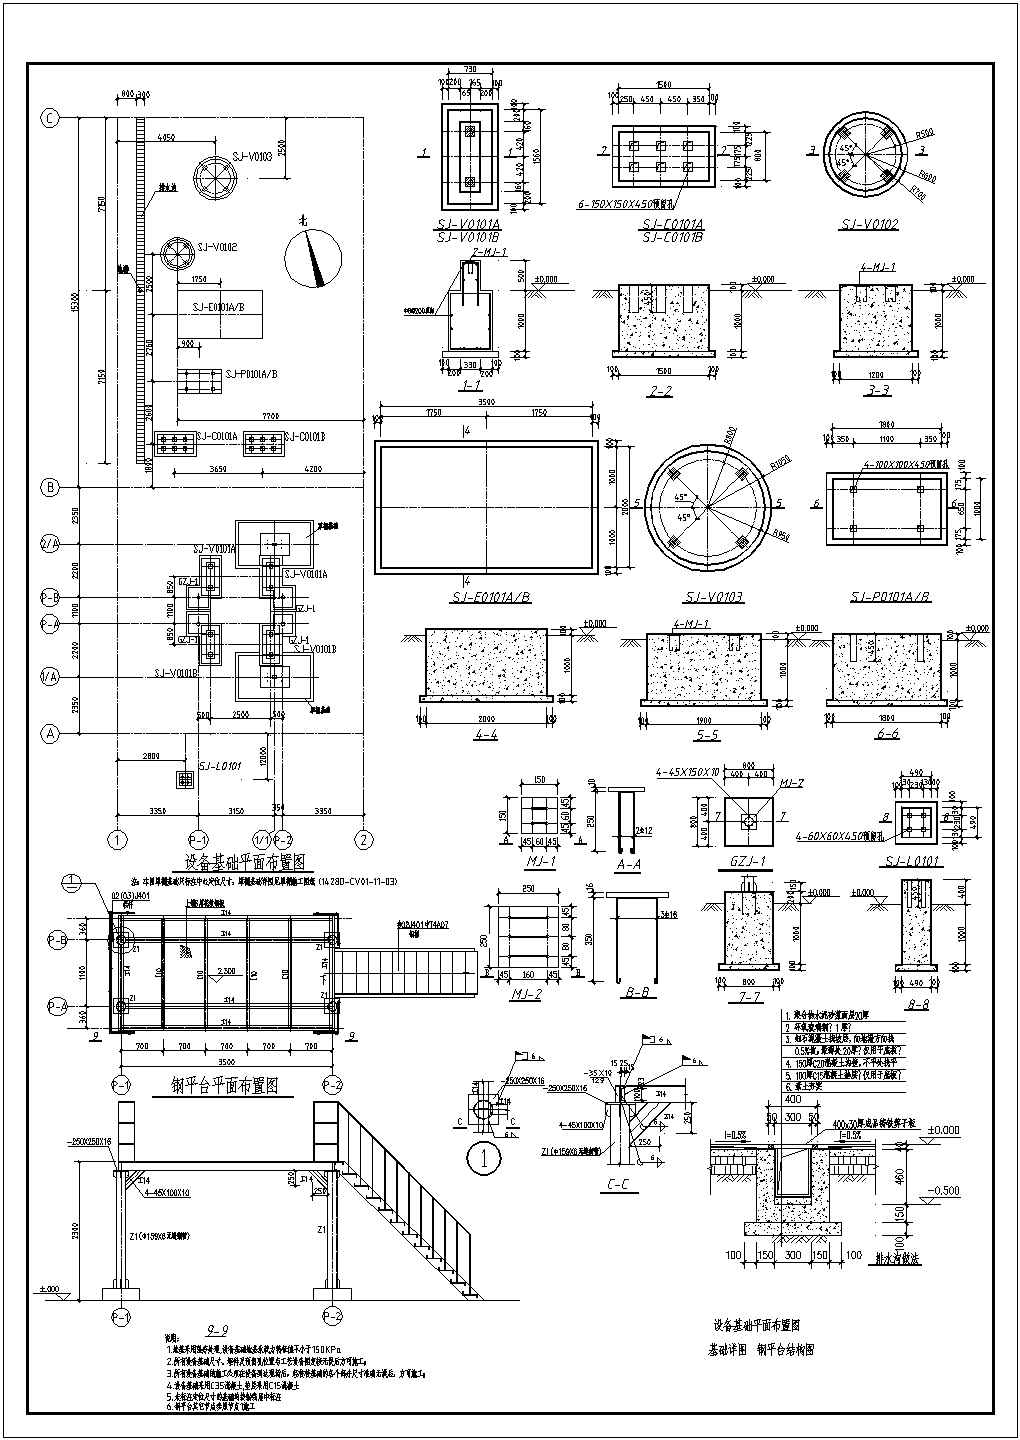 某集团公司氨站设备基础及钢平台施工图